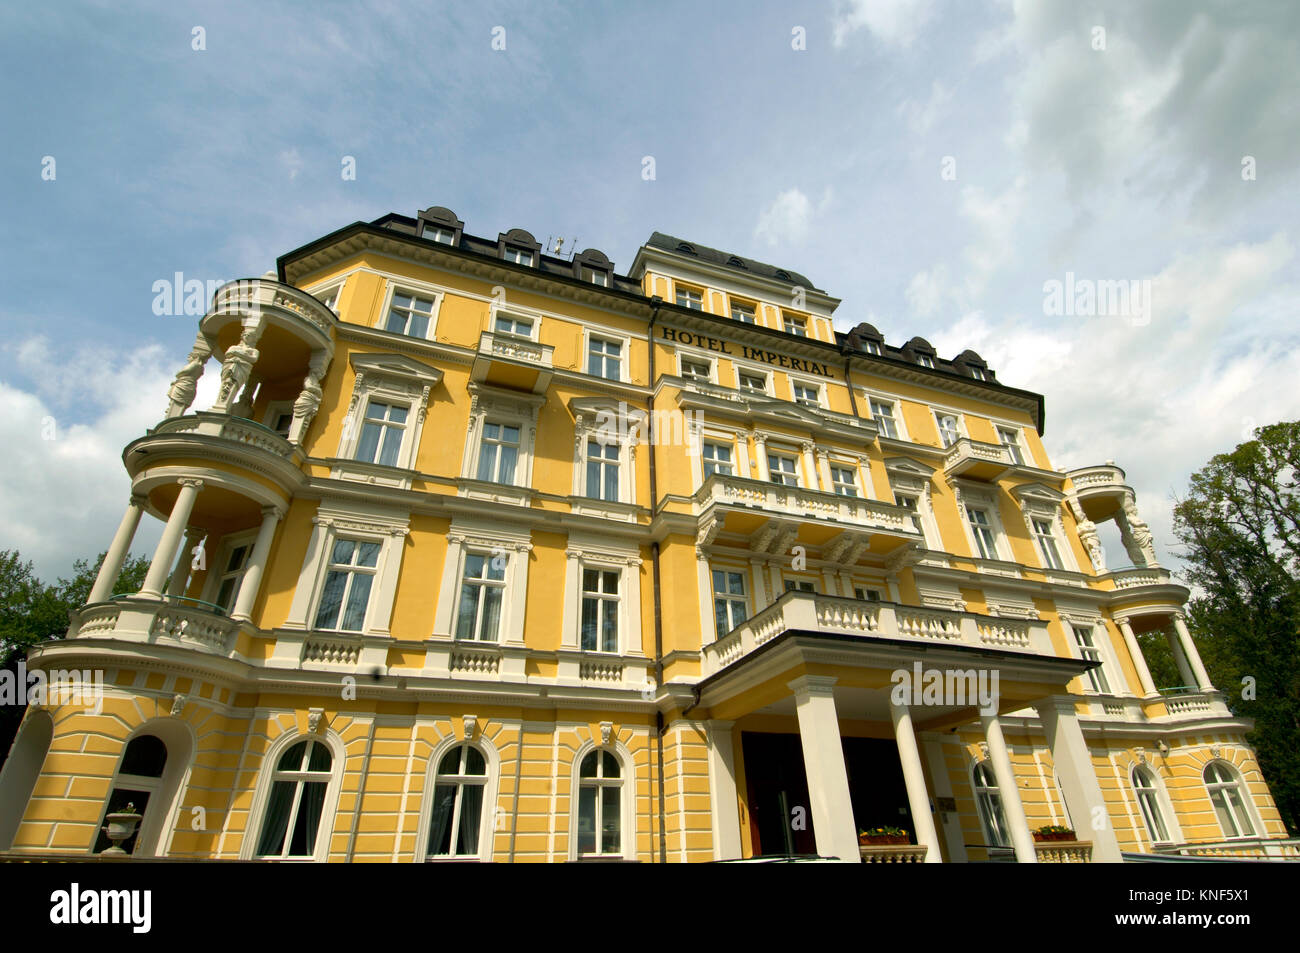 Tschechien, Böhmen : Franzensbad, historische Villa Imperial, erbaut im Neorenaissance-Stil, jetzt Kurhotel Imperial. Hier lernten sich Karl I., letzt Stock Photo